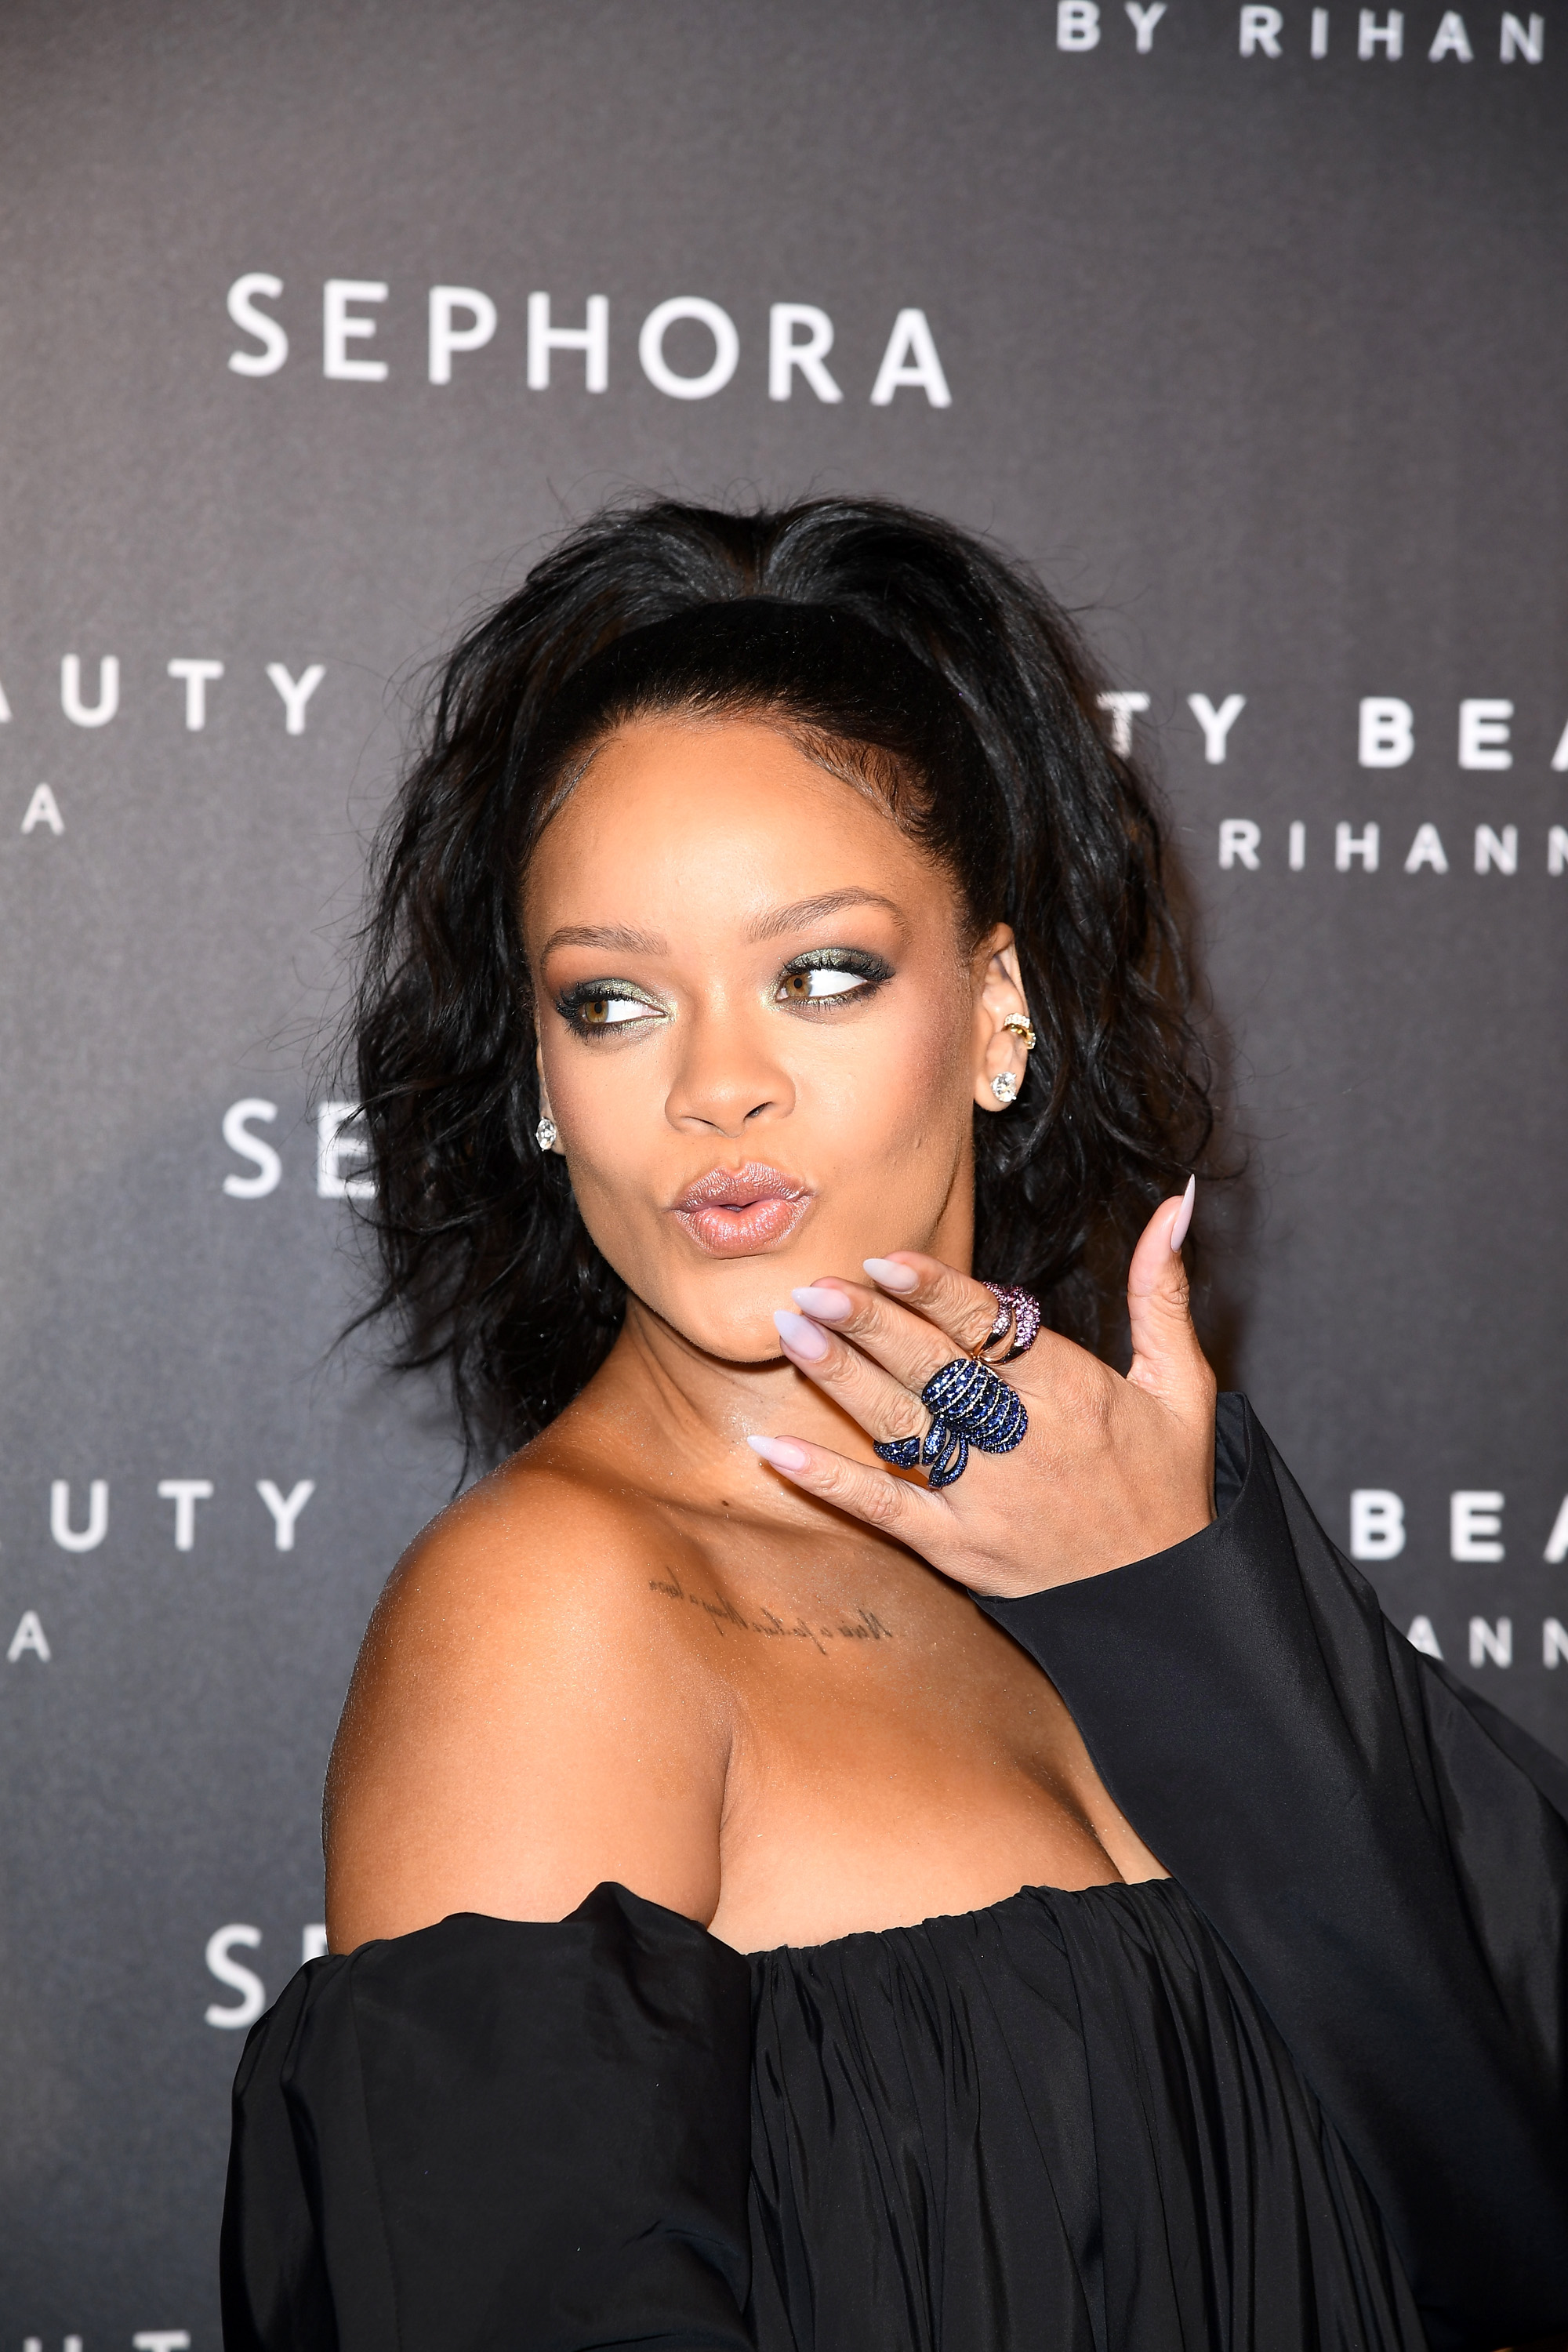 Η Rihanna φοράει το highlighter σαν κραγιόν (και θα το κάνουμε κι εμείς)!